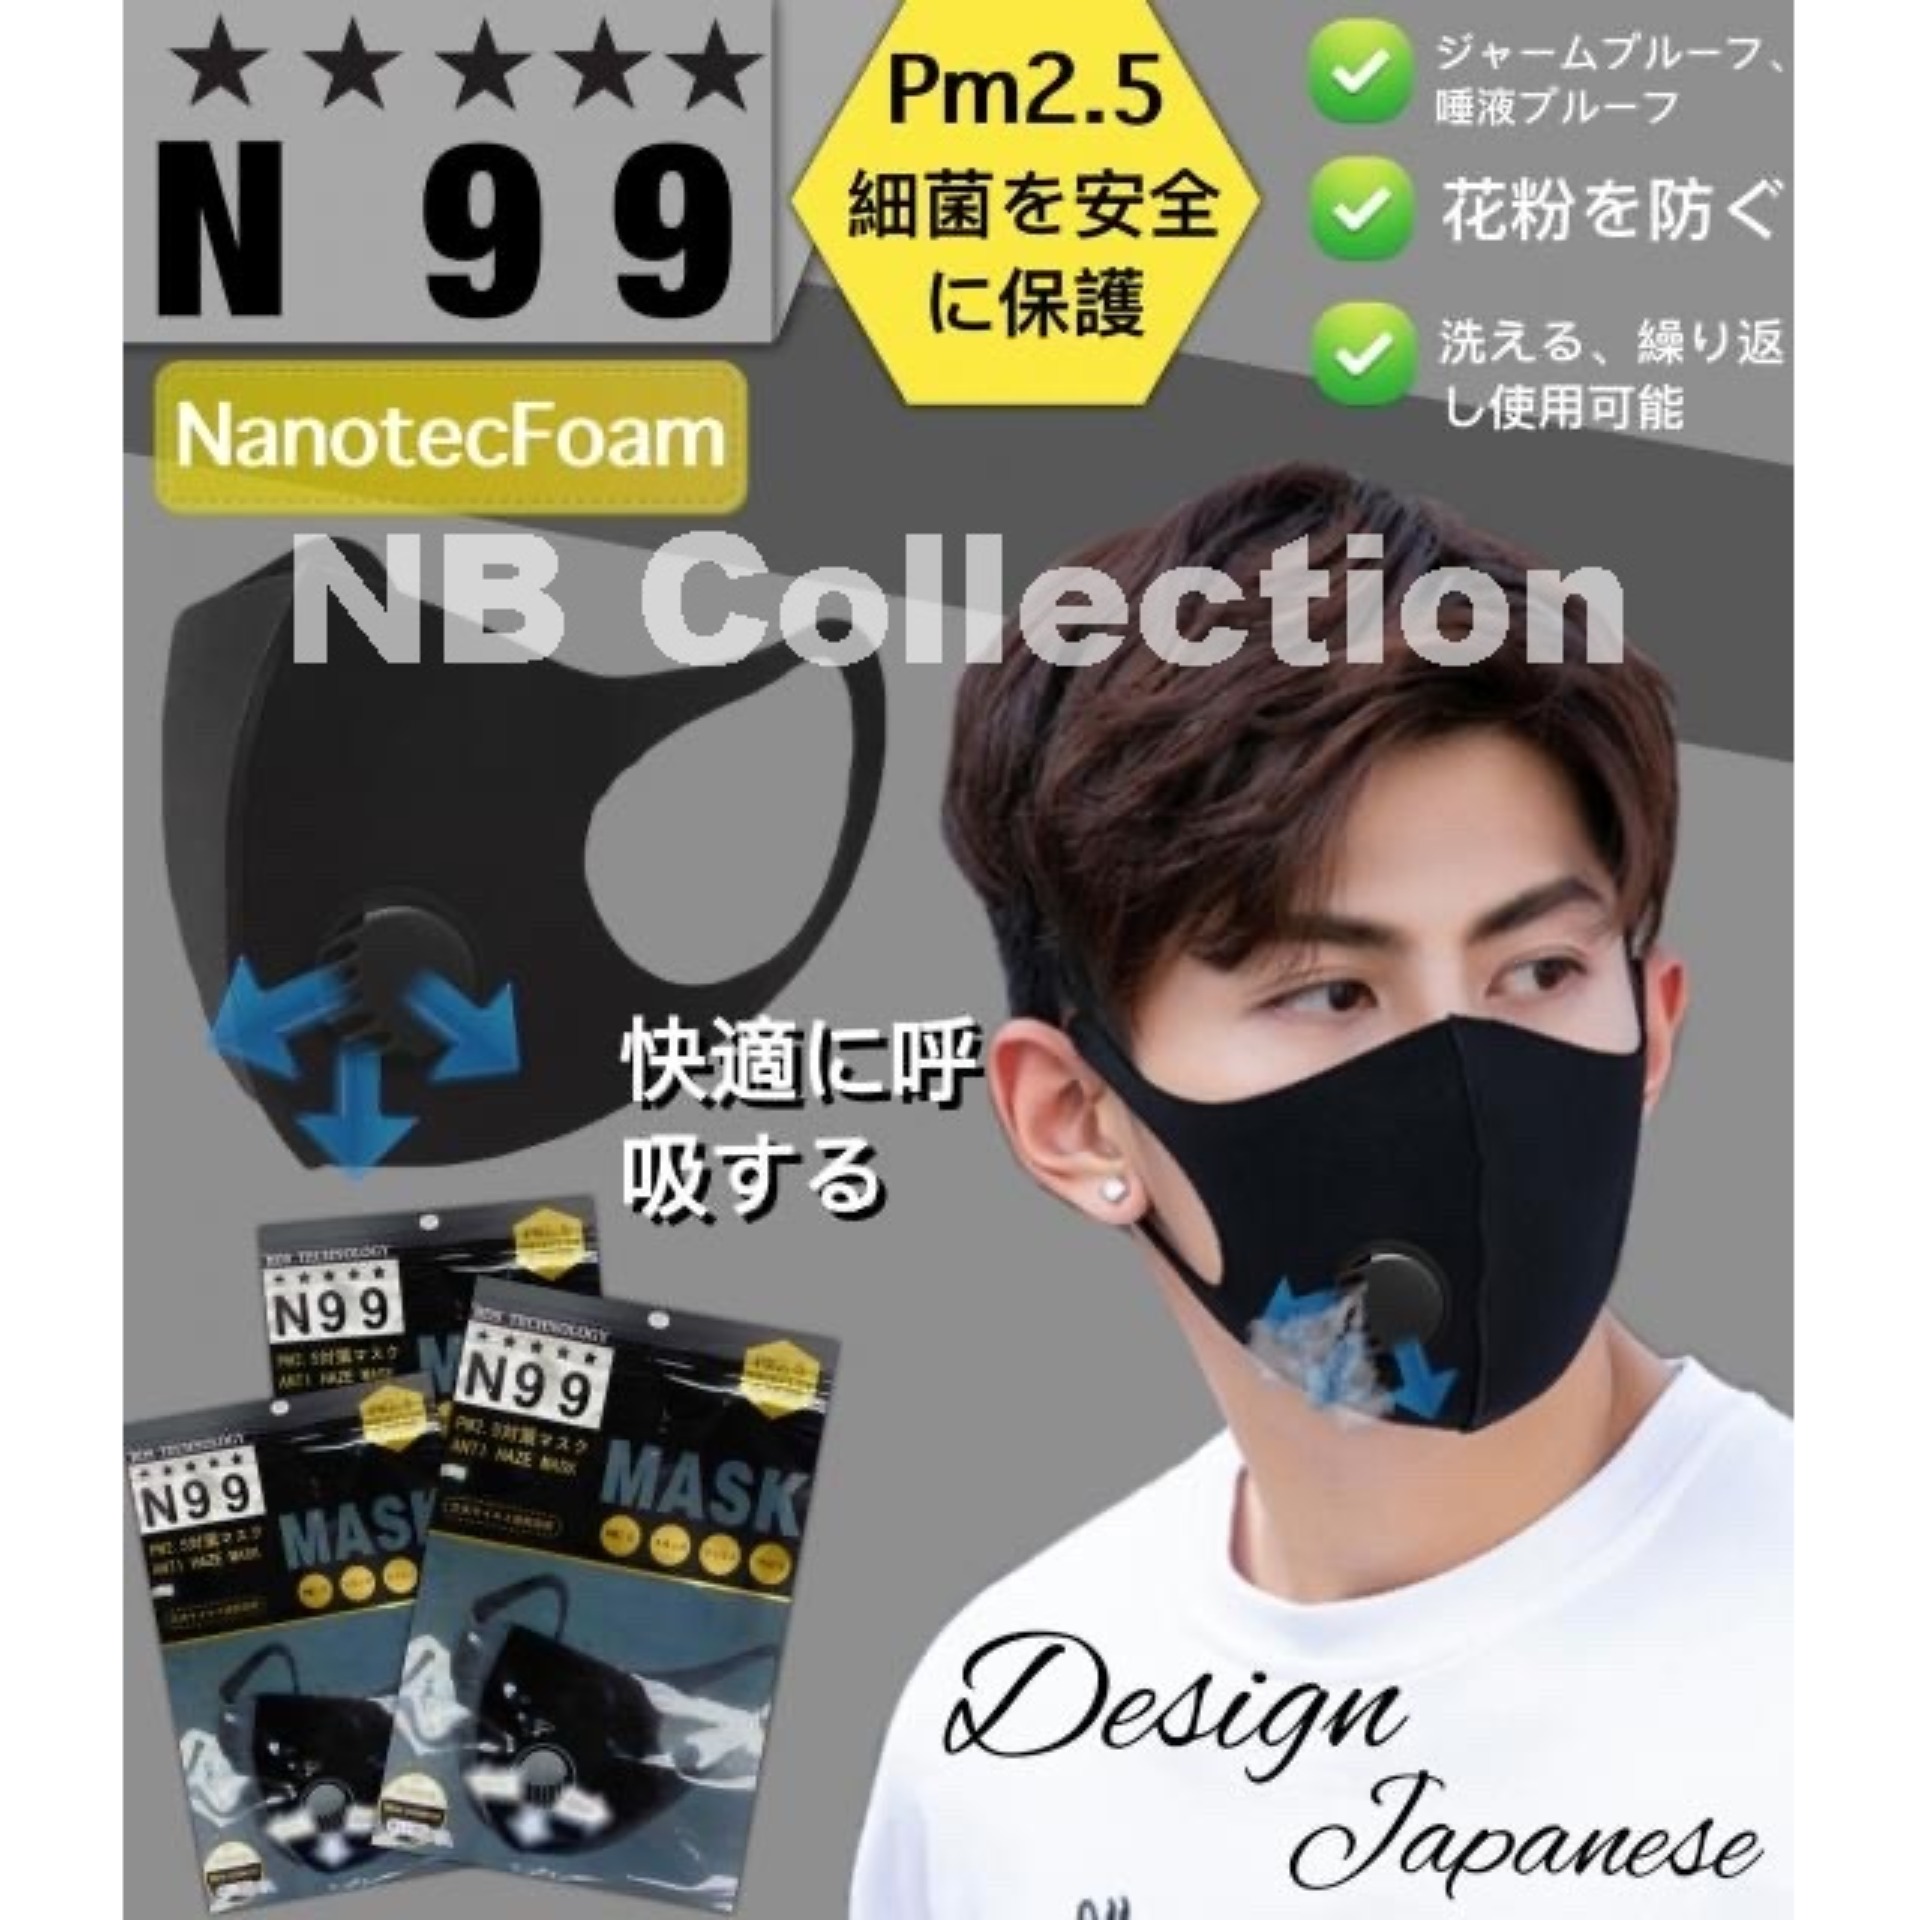 N99 mask Nanotec Foam หน้ากากกันฝุ่นพร้อมวาล์วหายใจโล่ง